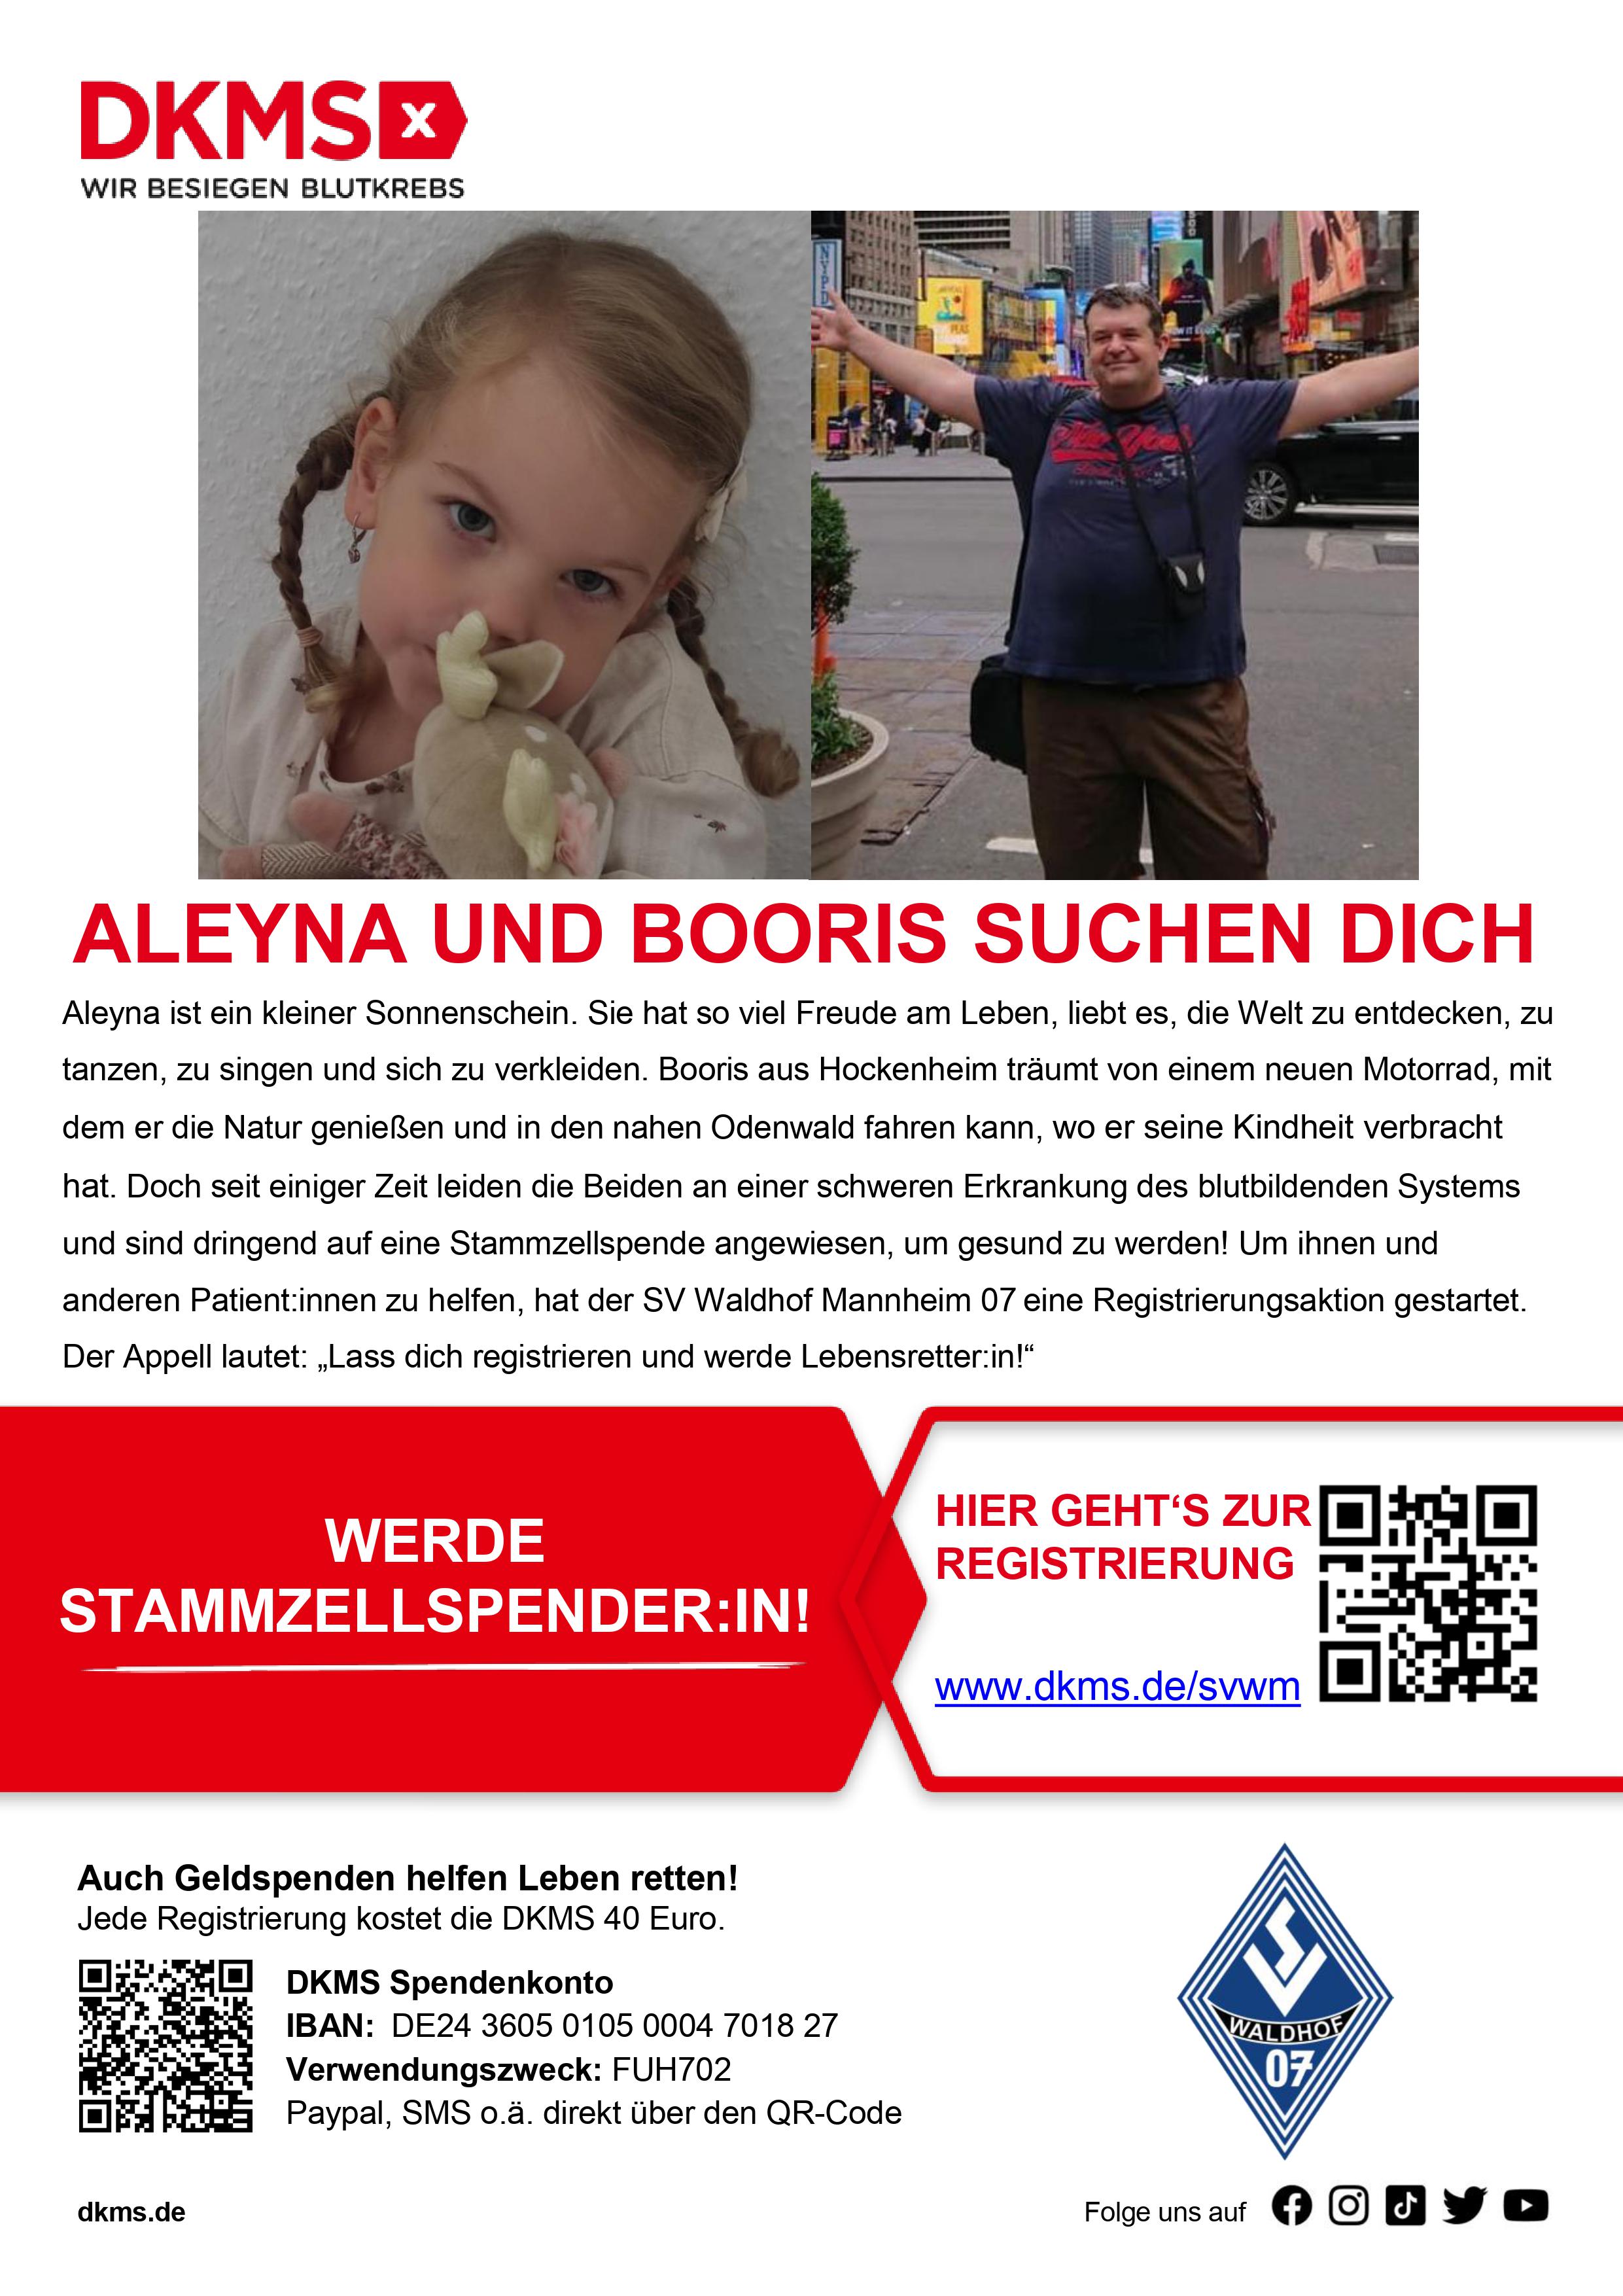 SV Waldhof für Aleyna und Booris